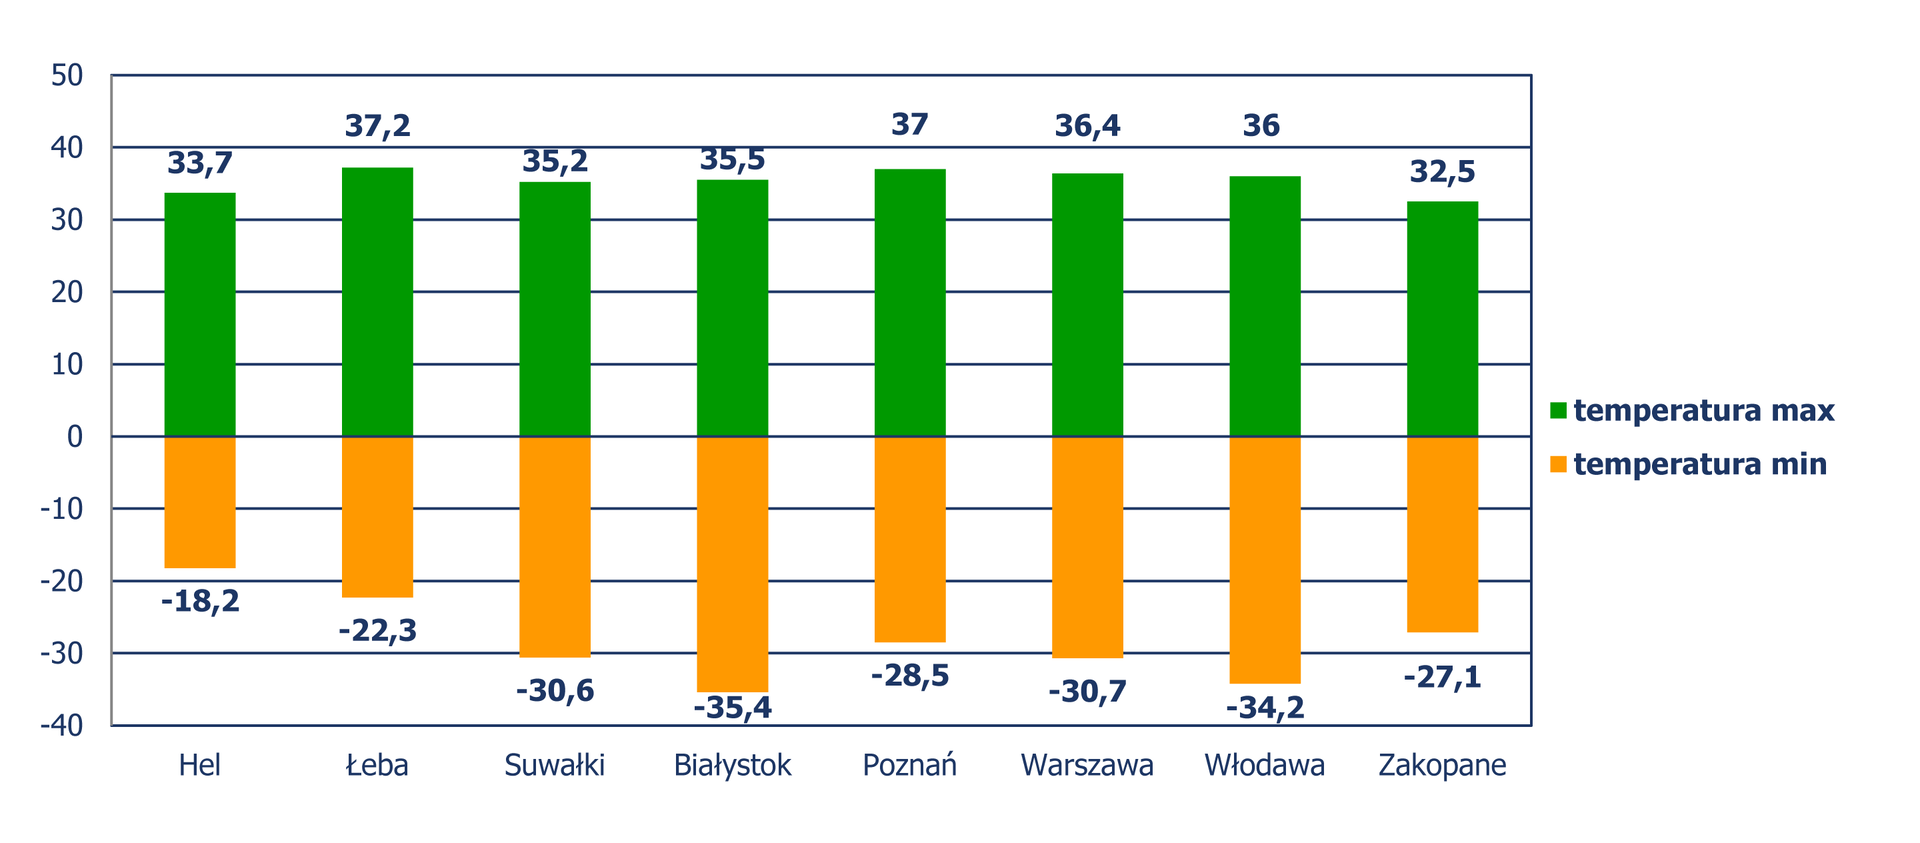 Diagram słupkowy pionowy, z którego odczytujemy minimalne i maksymalne temperatury w wybranych miastach Polski, zmierzone w latach 1971?2011. Temperatura minimalna: Hel: -18,2 stopni Celsjusza, Łeba: -22,3 stopni Celsjusza, Suwałki: -30,6 stopni Celsjusza, Białystok: -35,4 stopni Celsjusza, Poznań: -28,5 stopni Celsjusza, Warszawa: -30,7 stopni Celsjusza, Włodawa: -34,2 stopni Celsjusza i Zakopane: -27,1 stopni Celsjusza. Temperatura maksymalna: Hel: 33,7 stopni Celsjusza, Łeba: 37,2 stopni Celsjusza, Suwałki: 35,2 stopni Celsjusza, Białystok: 35,5 stopni Celsjusza, Poznań: 37 stopni Celsjusza, Warszawa: 36,4 stopni Celsjusza, Włodawa: 36 stopni Celsjusza i Zakopane: 32,5 stopni Celsjusza.